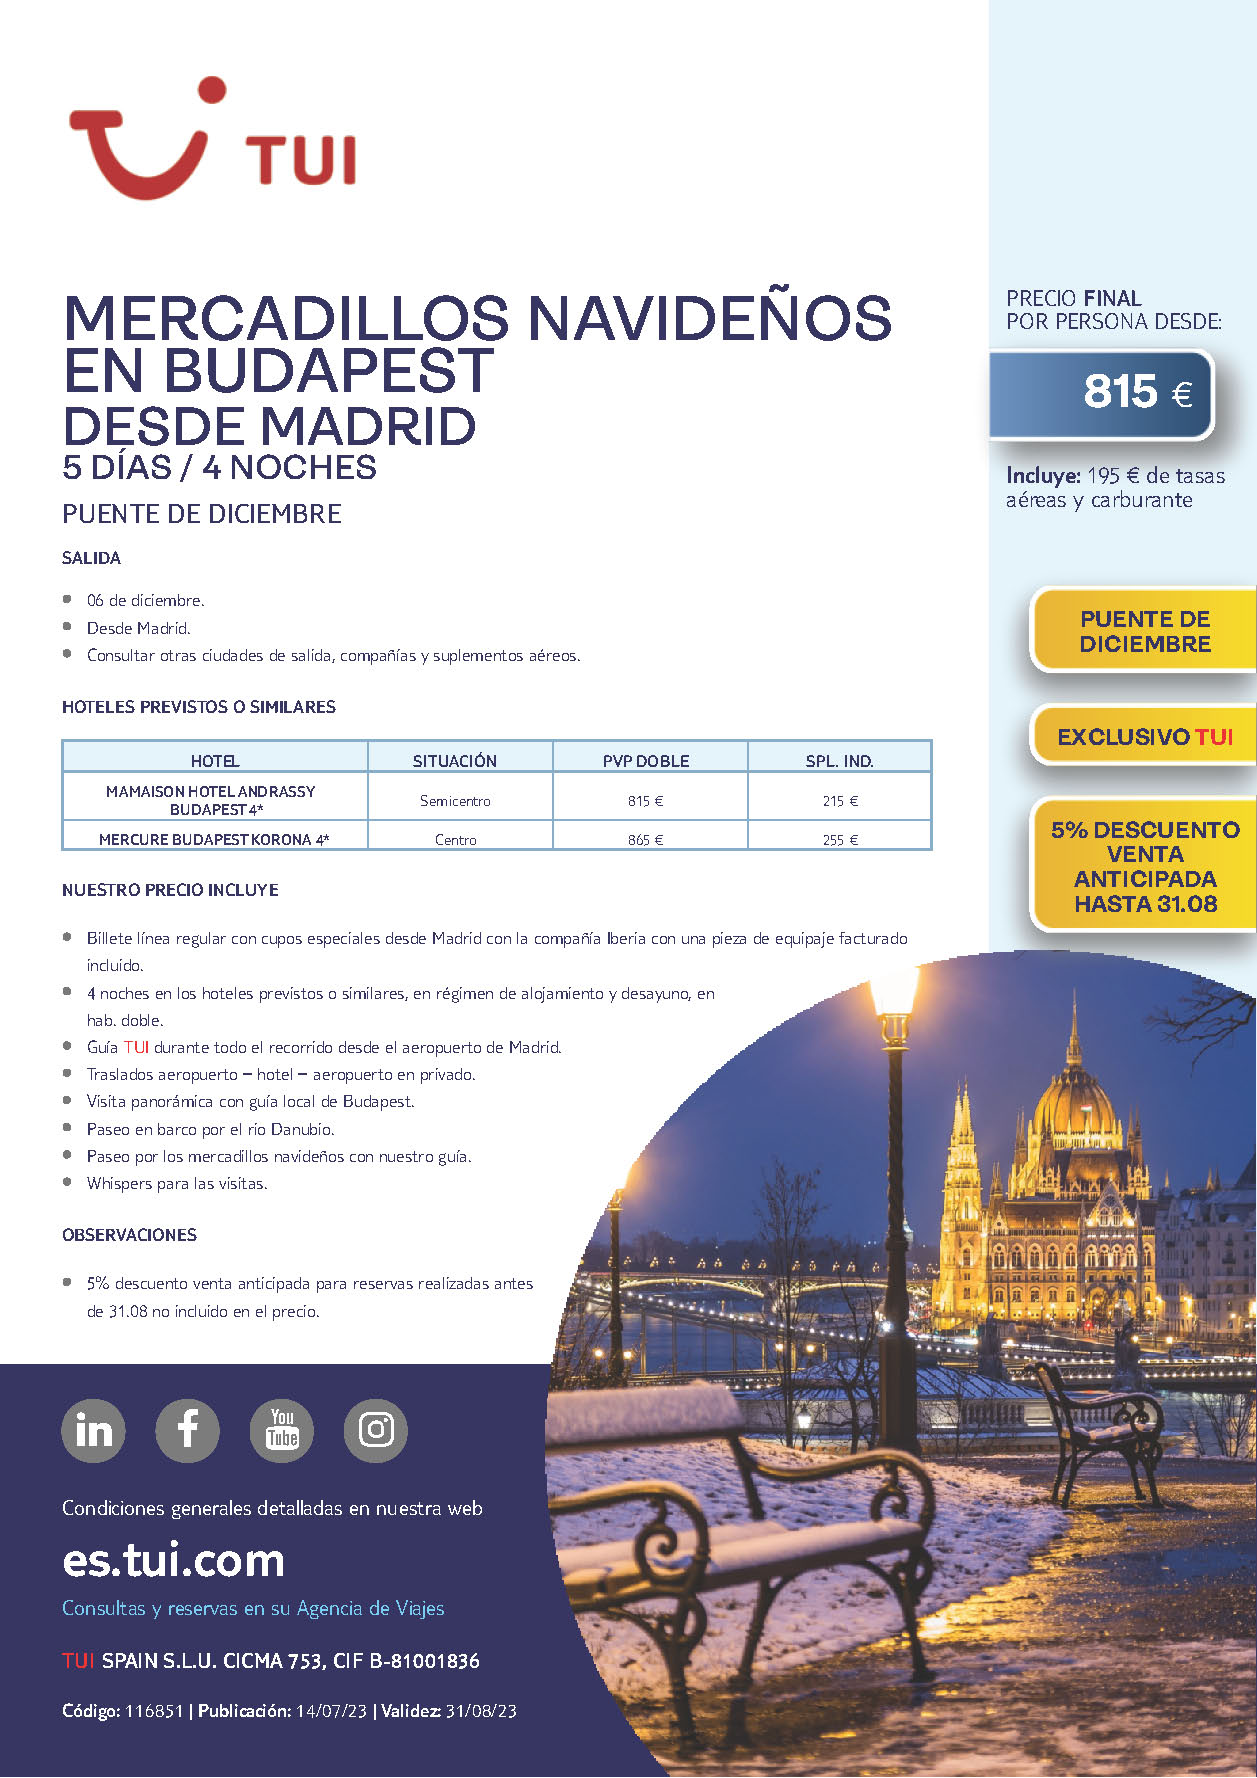 Oferta TUI Puente de Diciembre 2023 Mercadillos Navideños en Budapest 5 dias salida 6 de diciembre vuelo regular desde Madrid